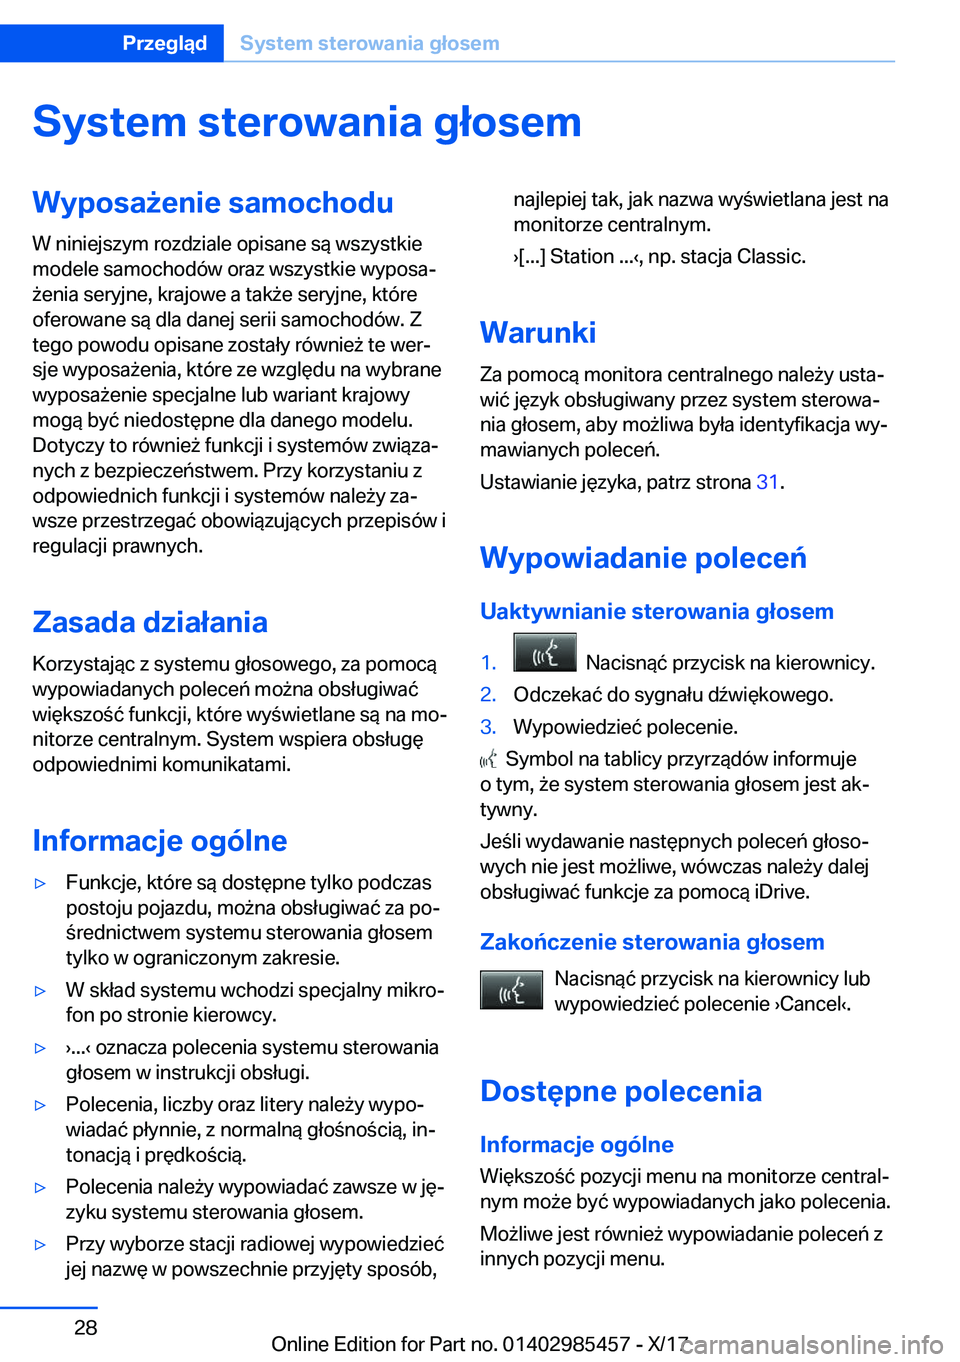 BMW X1 2018  Instrukcja obsługi (in Polish) �S�y�s�t�e�m��s�t�e�r�o�w�a�n�i�a��g�ł�o�s�e�m�W�y�p�o�s�a9�e�n�i�e��s�a�m�o�c�h�o�d�u
�W� �n�i�n�i�e�j�s�z�y�m� �r�o�z�d�z�i�a�l�e� �o�p�i�s�a�n�e� �s�